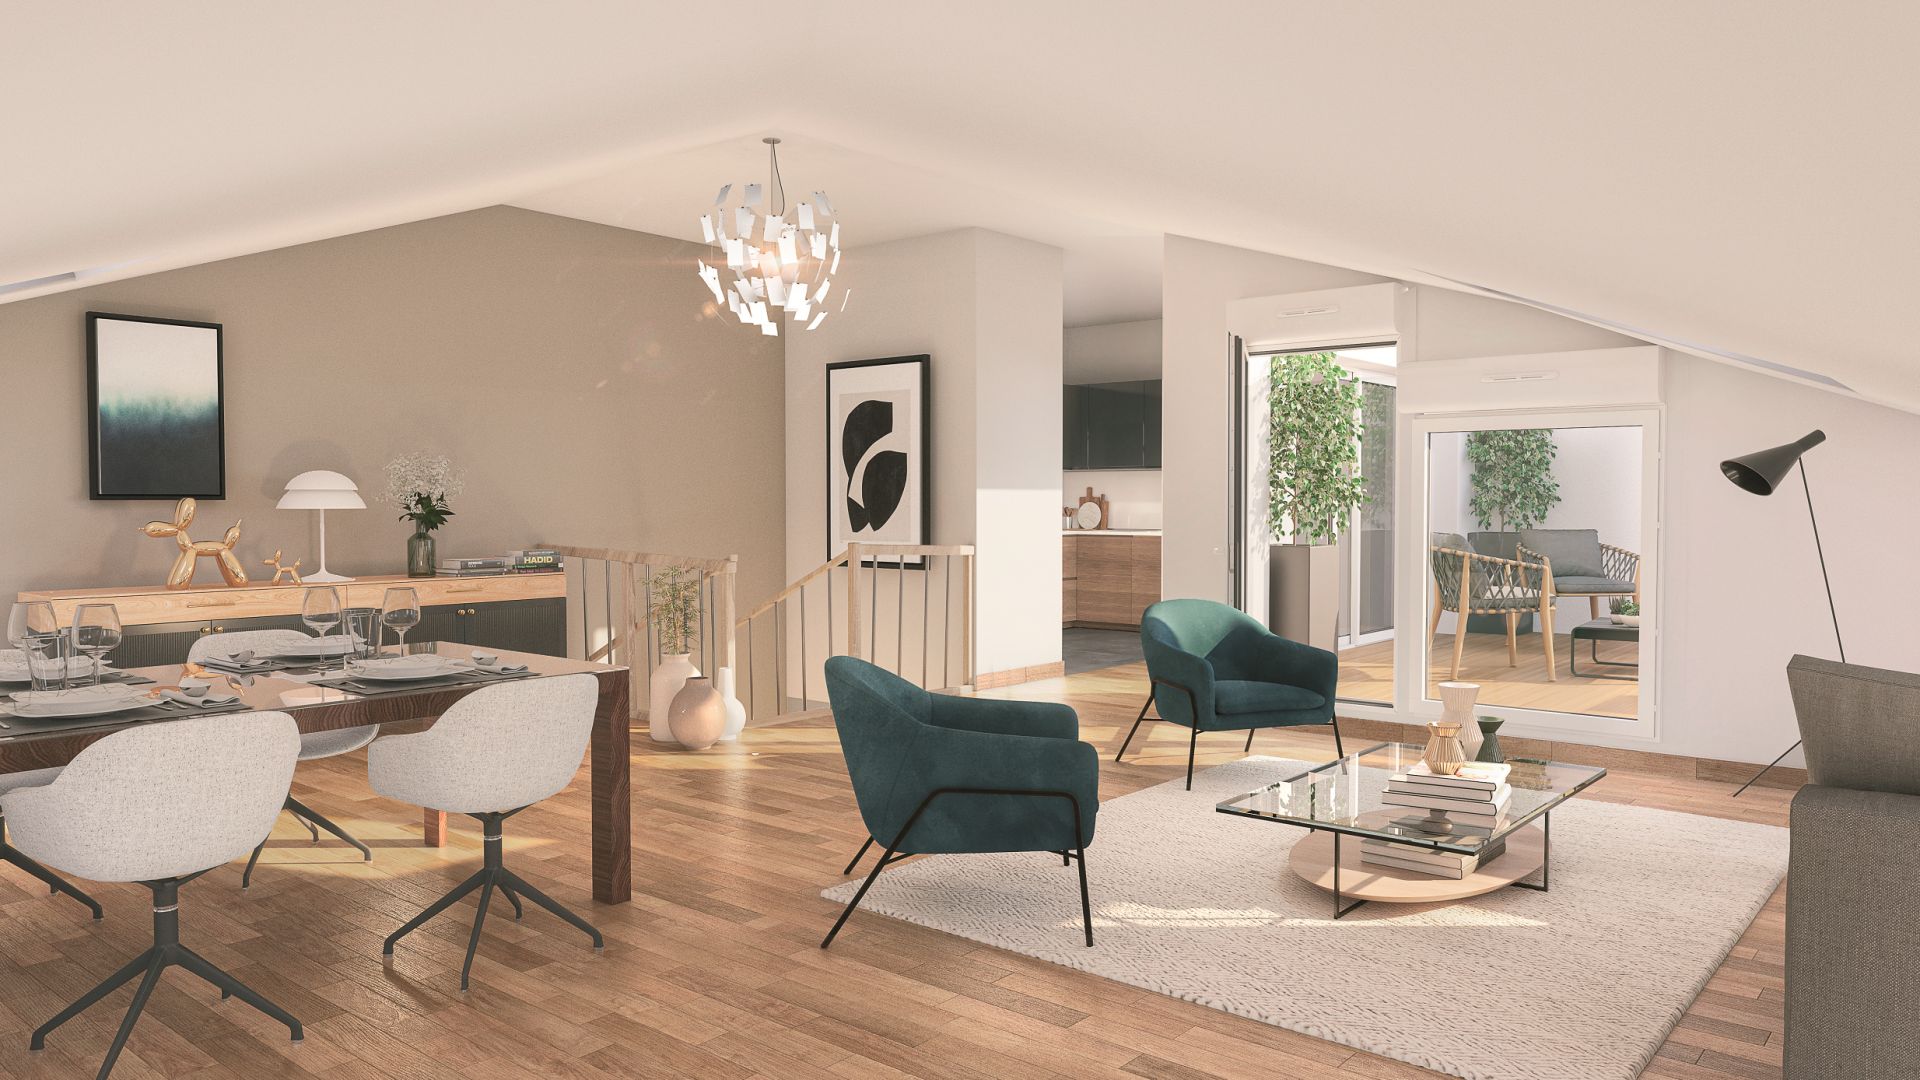 Greencity immobilier - achat appartements neufs du T2 au T5Duplex - Résidence Le Majorelle - 31240 L'Union  - vue intérieure